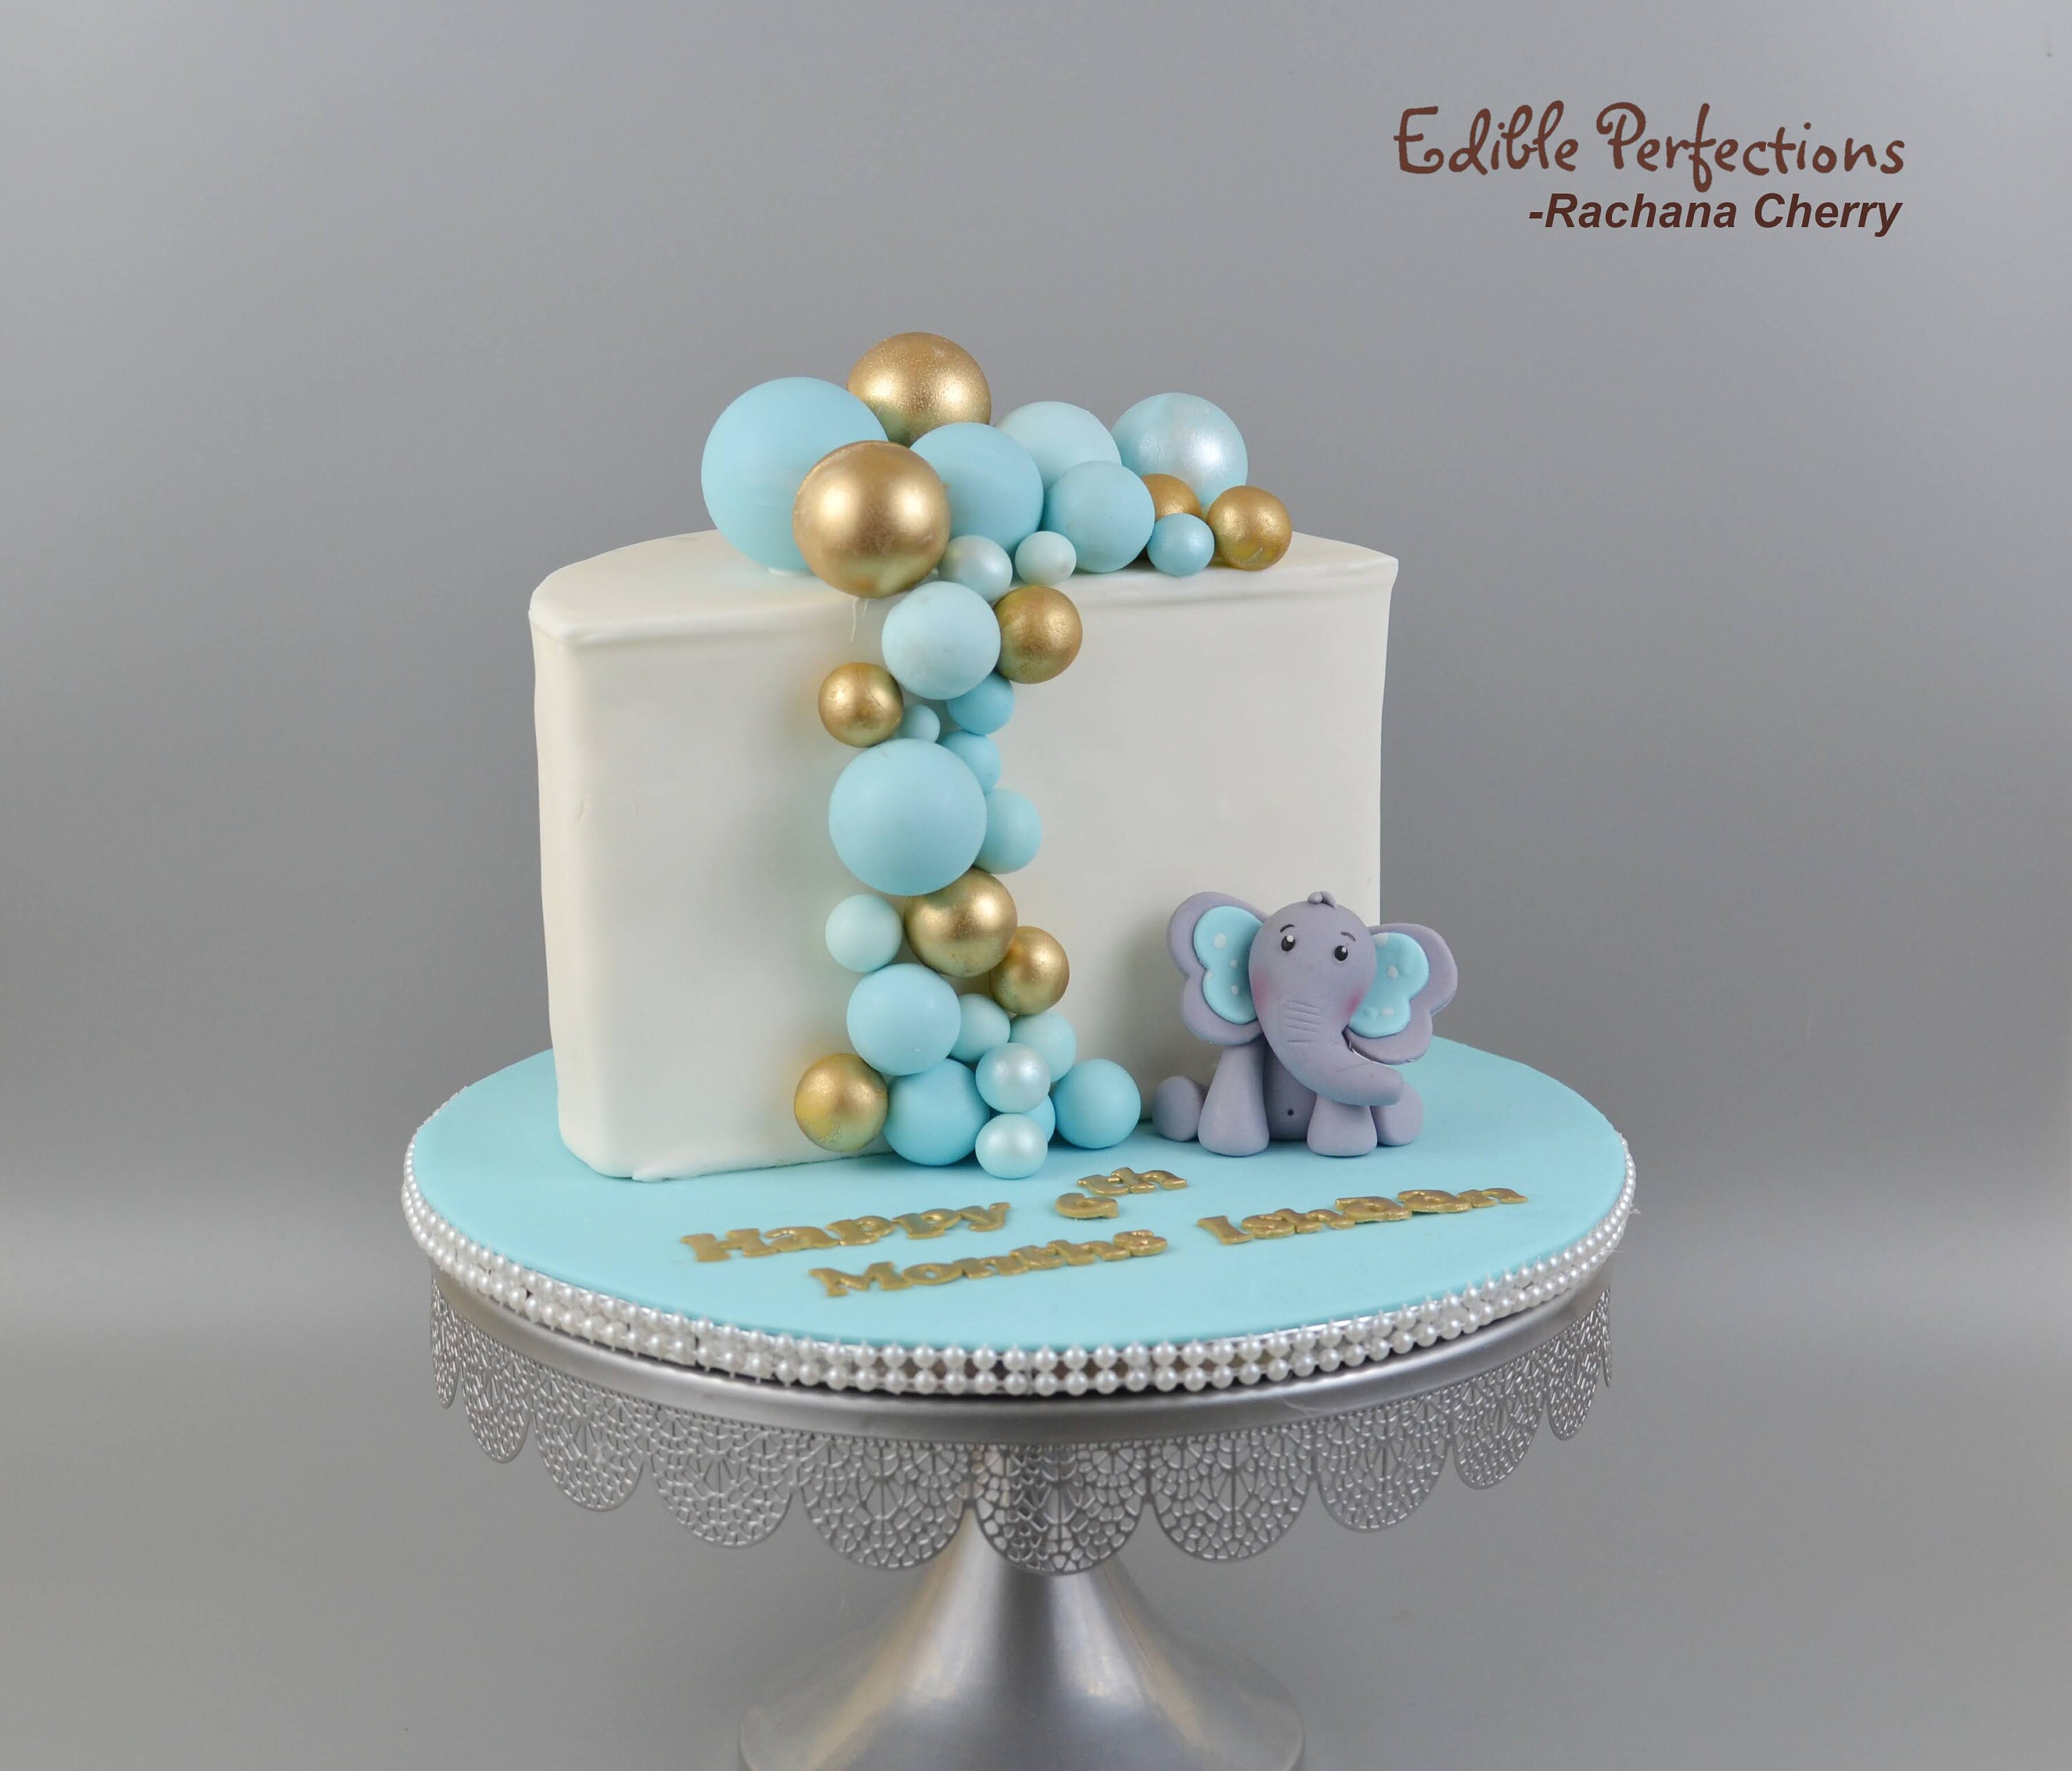 Gâteau Pour Une Baby Shower Beau Gâteau Au Mastic Décor Bleu Pour